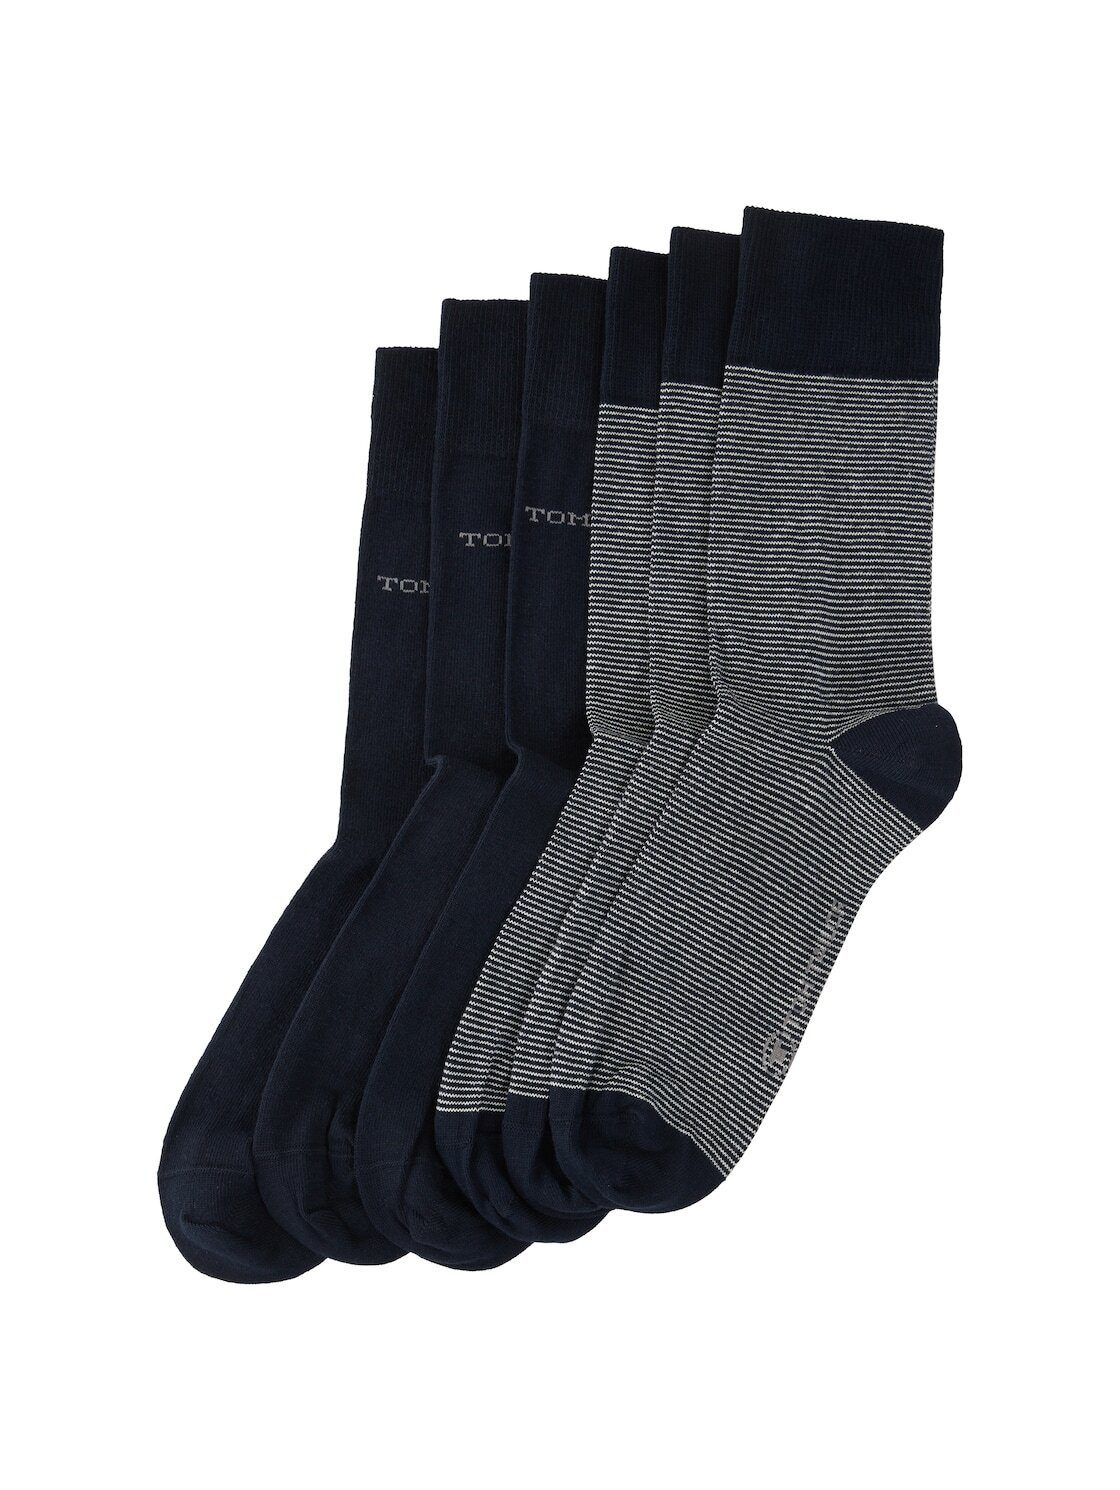 Socken TAILOR Socken Sechserpack) (im TOM Sechserpack